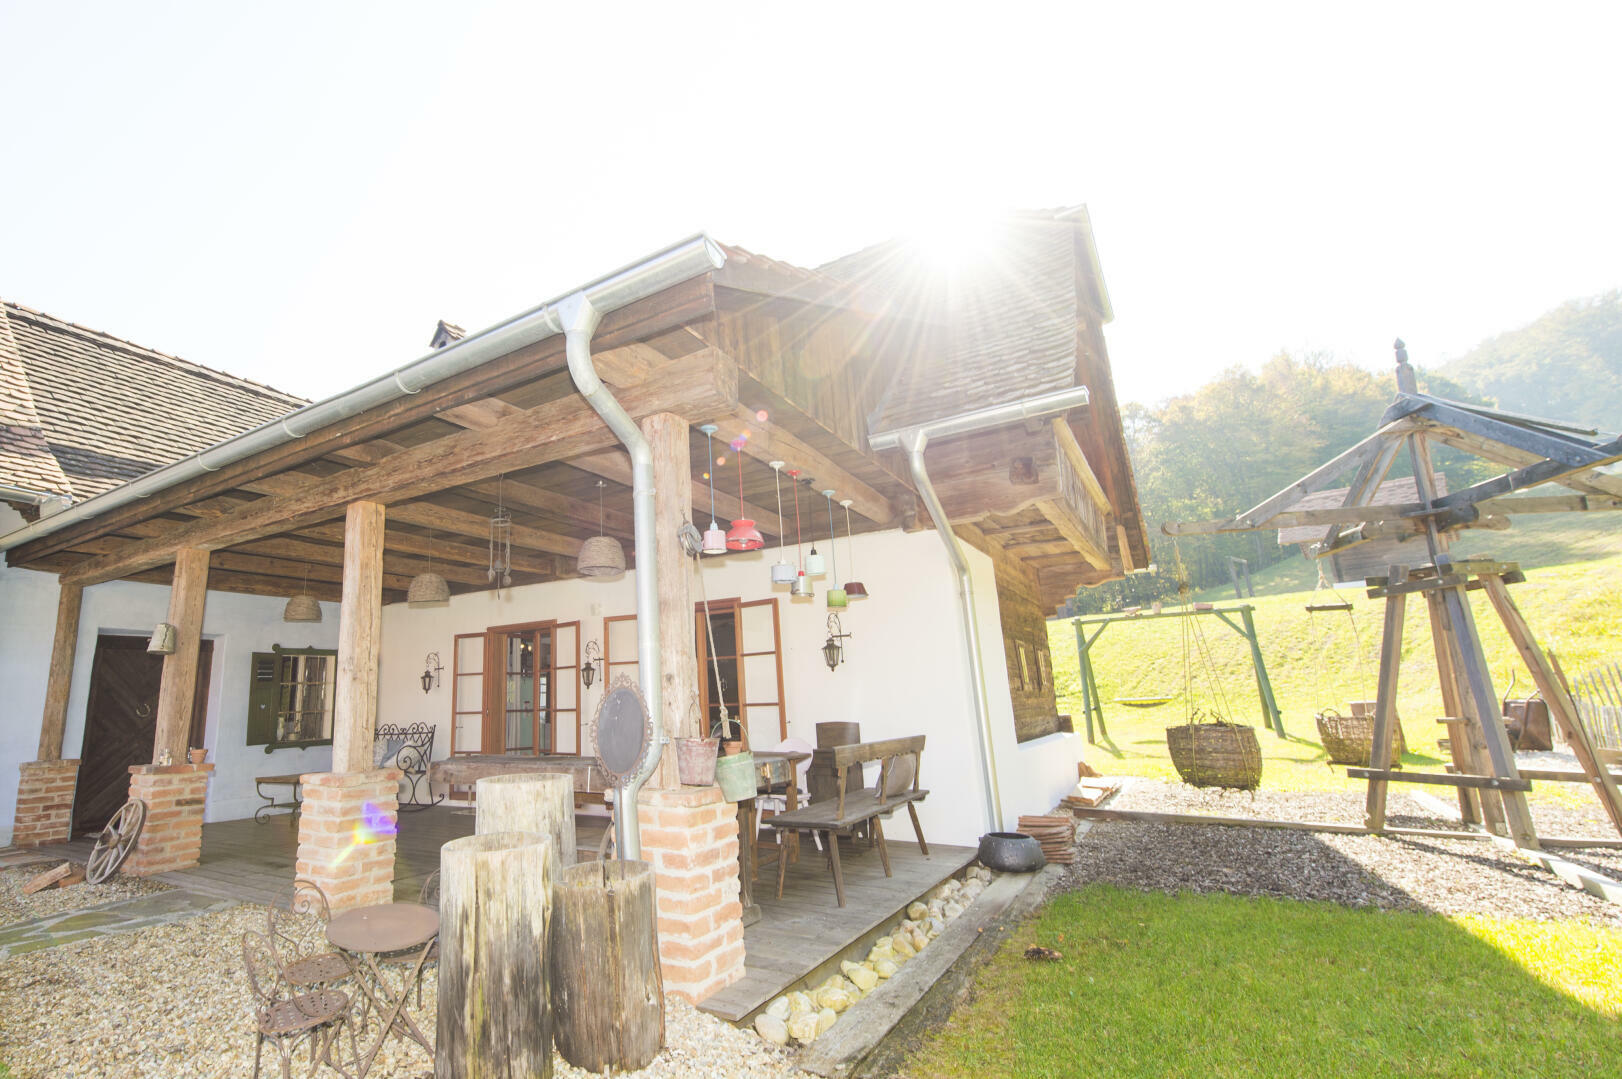 Land- und Forstwirtschaft zu kaufen: Ober-Henndorf, 8020 Graz - Landhaus in Thermenregion (54)